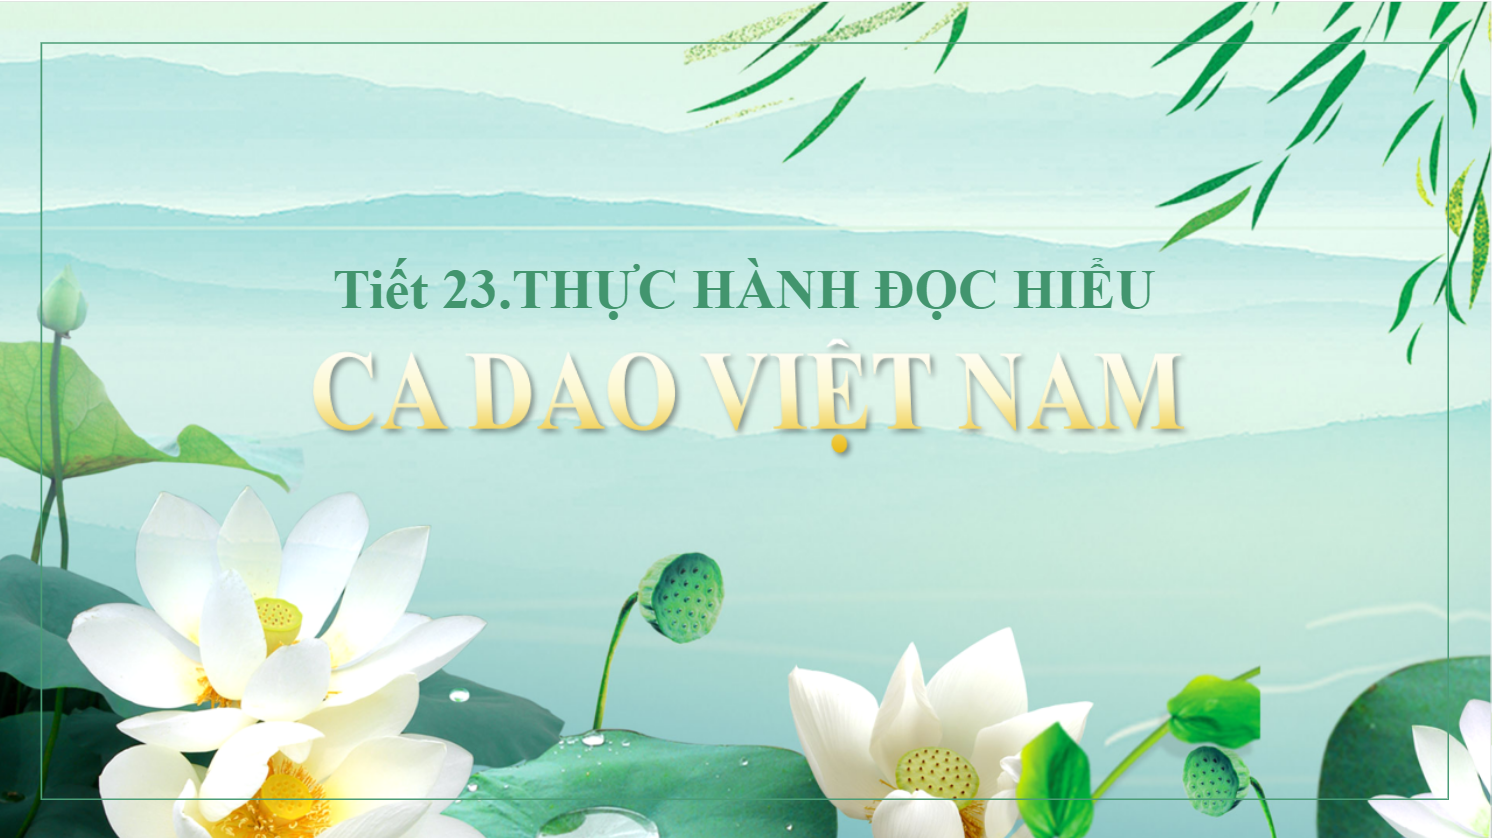 Thực hành Đọc hiểu "Ca dao Việt Nam"